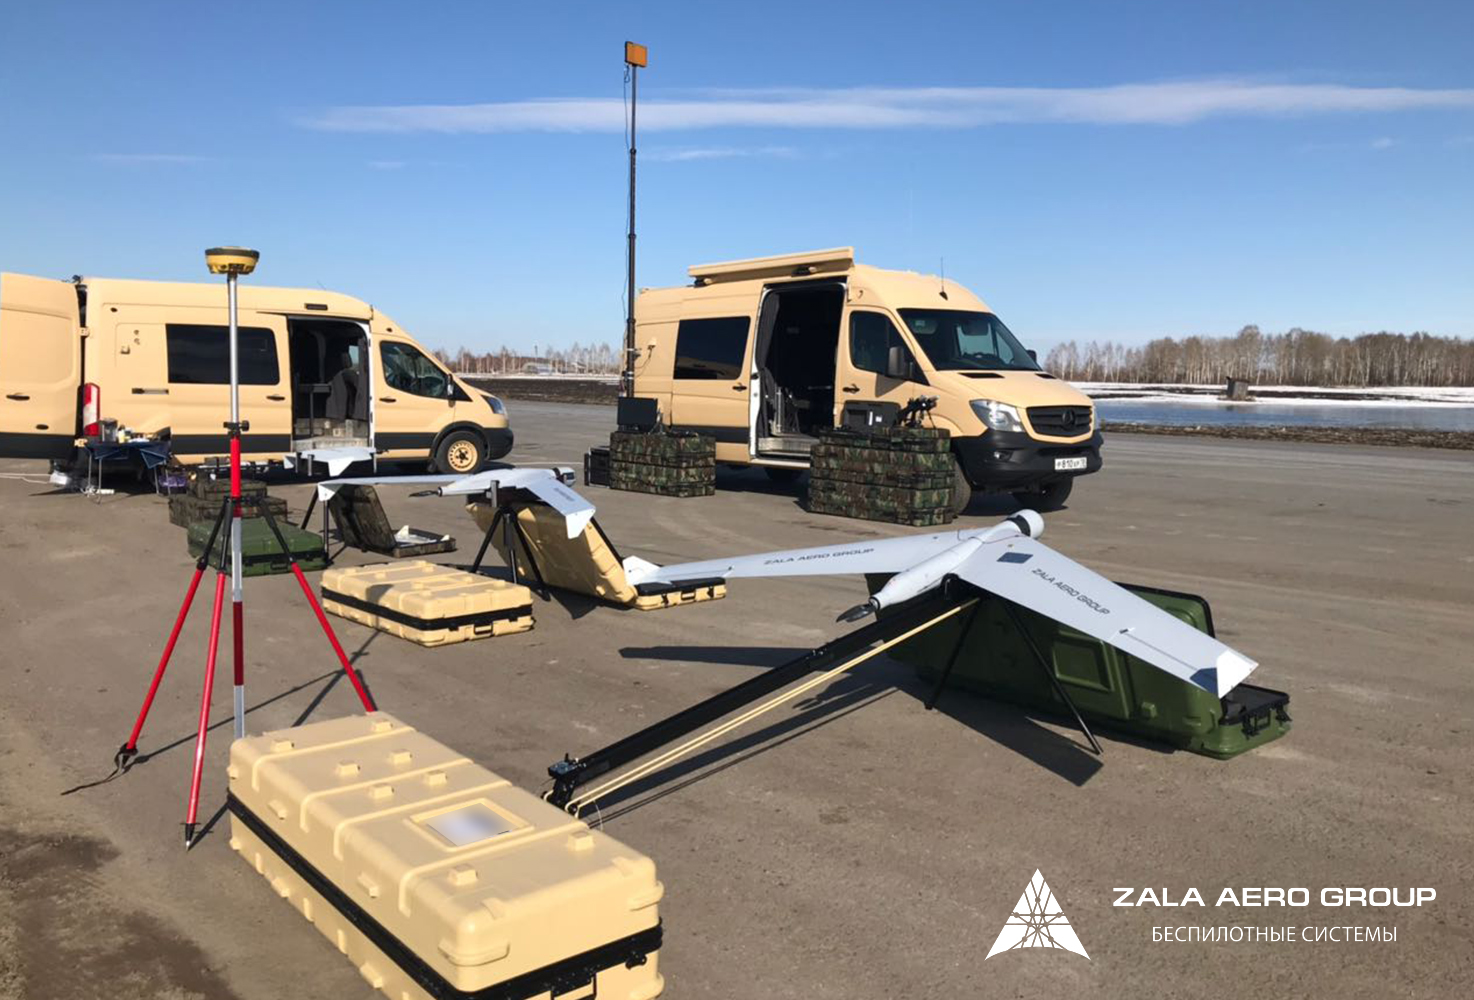 Zala Aero Group là cơ sở phát triển và sáng tạo hàng đầu về chế tạo các thiết bị bay không người lái Nga. Ảnh: Zala Aero